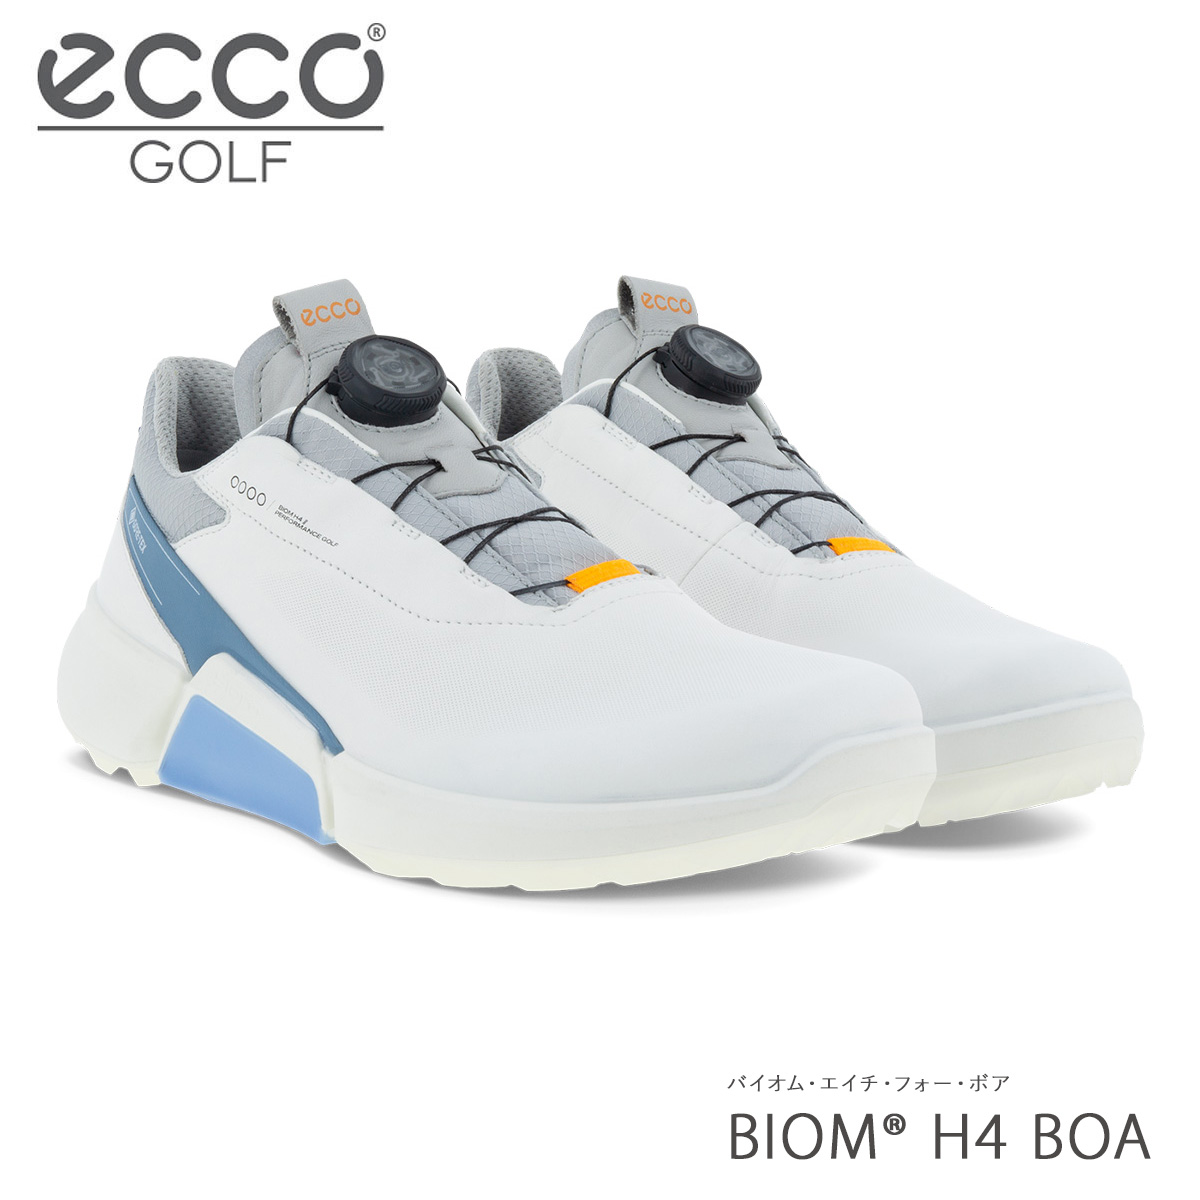 エコー ゴルフ シューズ バイオム エイチ フォー ボア スパイクレス メンズ 男性用 108504 ECCO BIOM H4 BOA リール  ダイヤル式 靴 メンズゴルフ